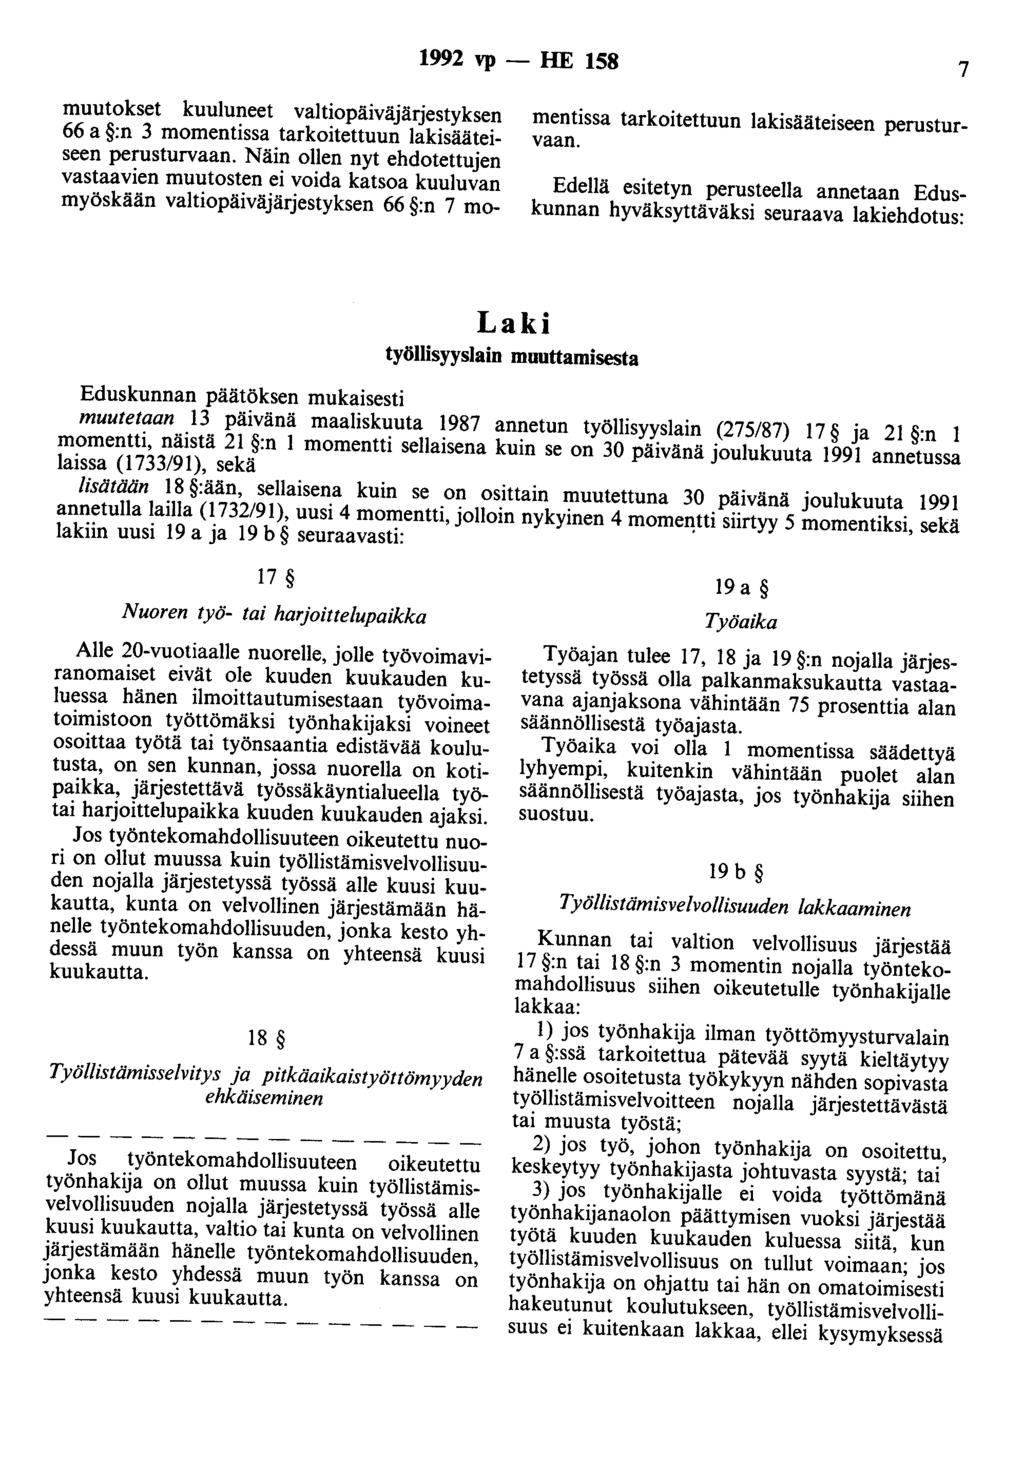 1992 vp -- lie 158 7 muutokset kuuluneet valtiopäiväjärjestyksen 66 a :n 3 momentissa tarkoitettuun lakisääteiseen perusturvaan.